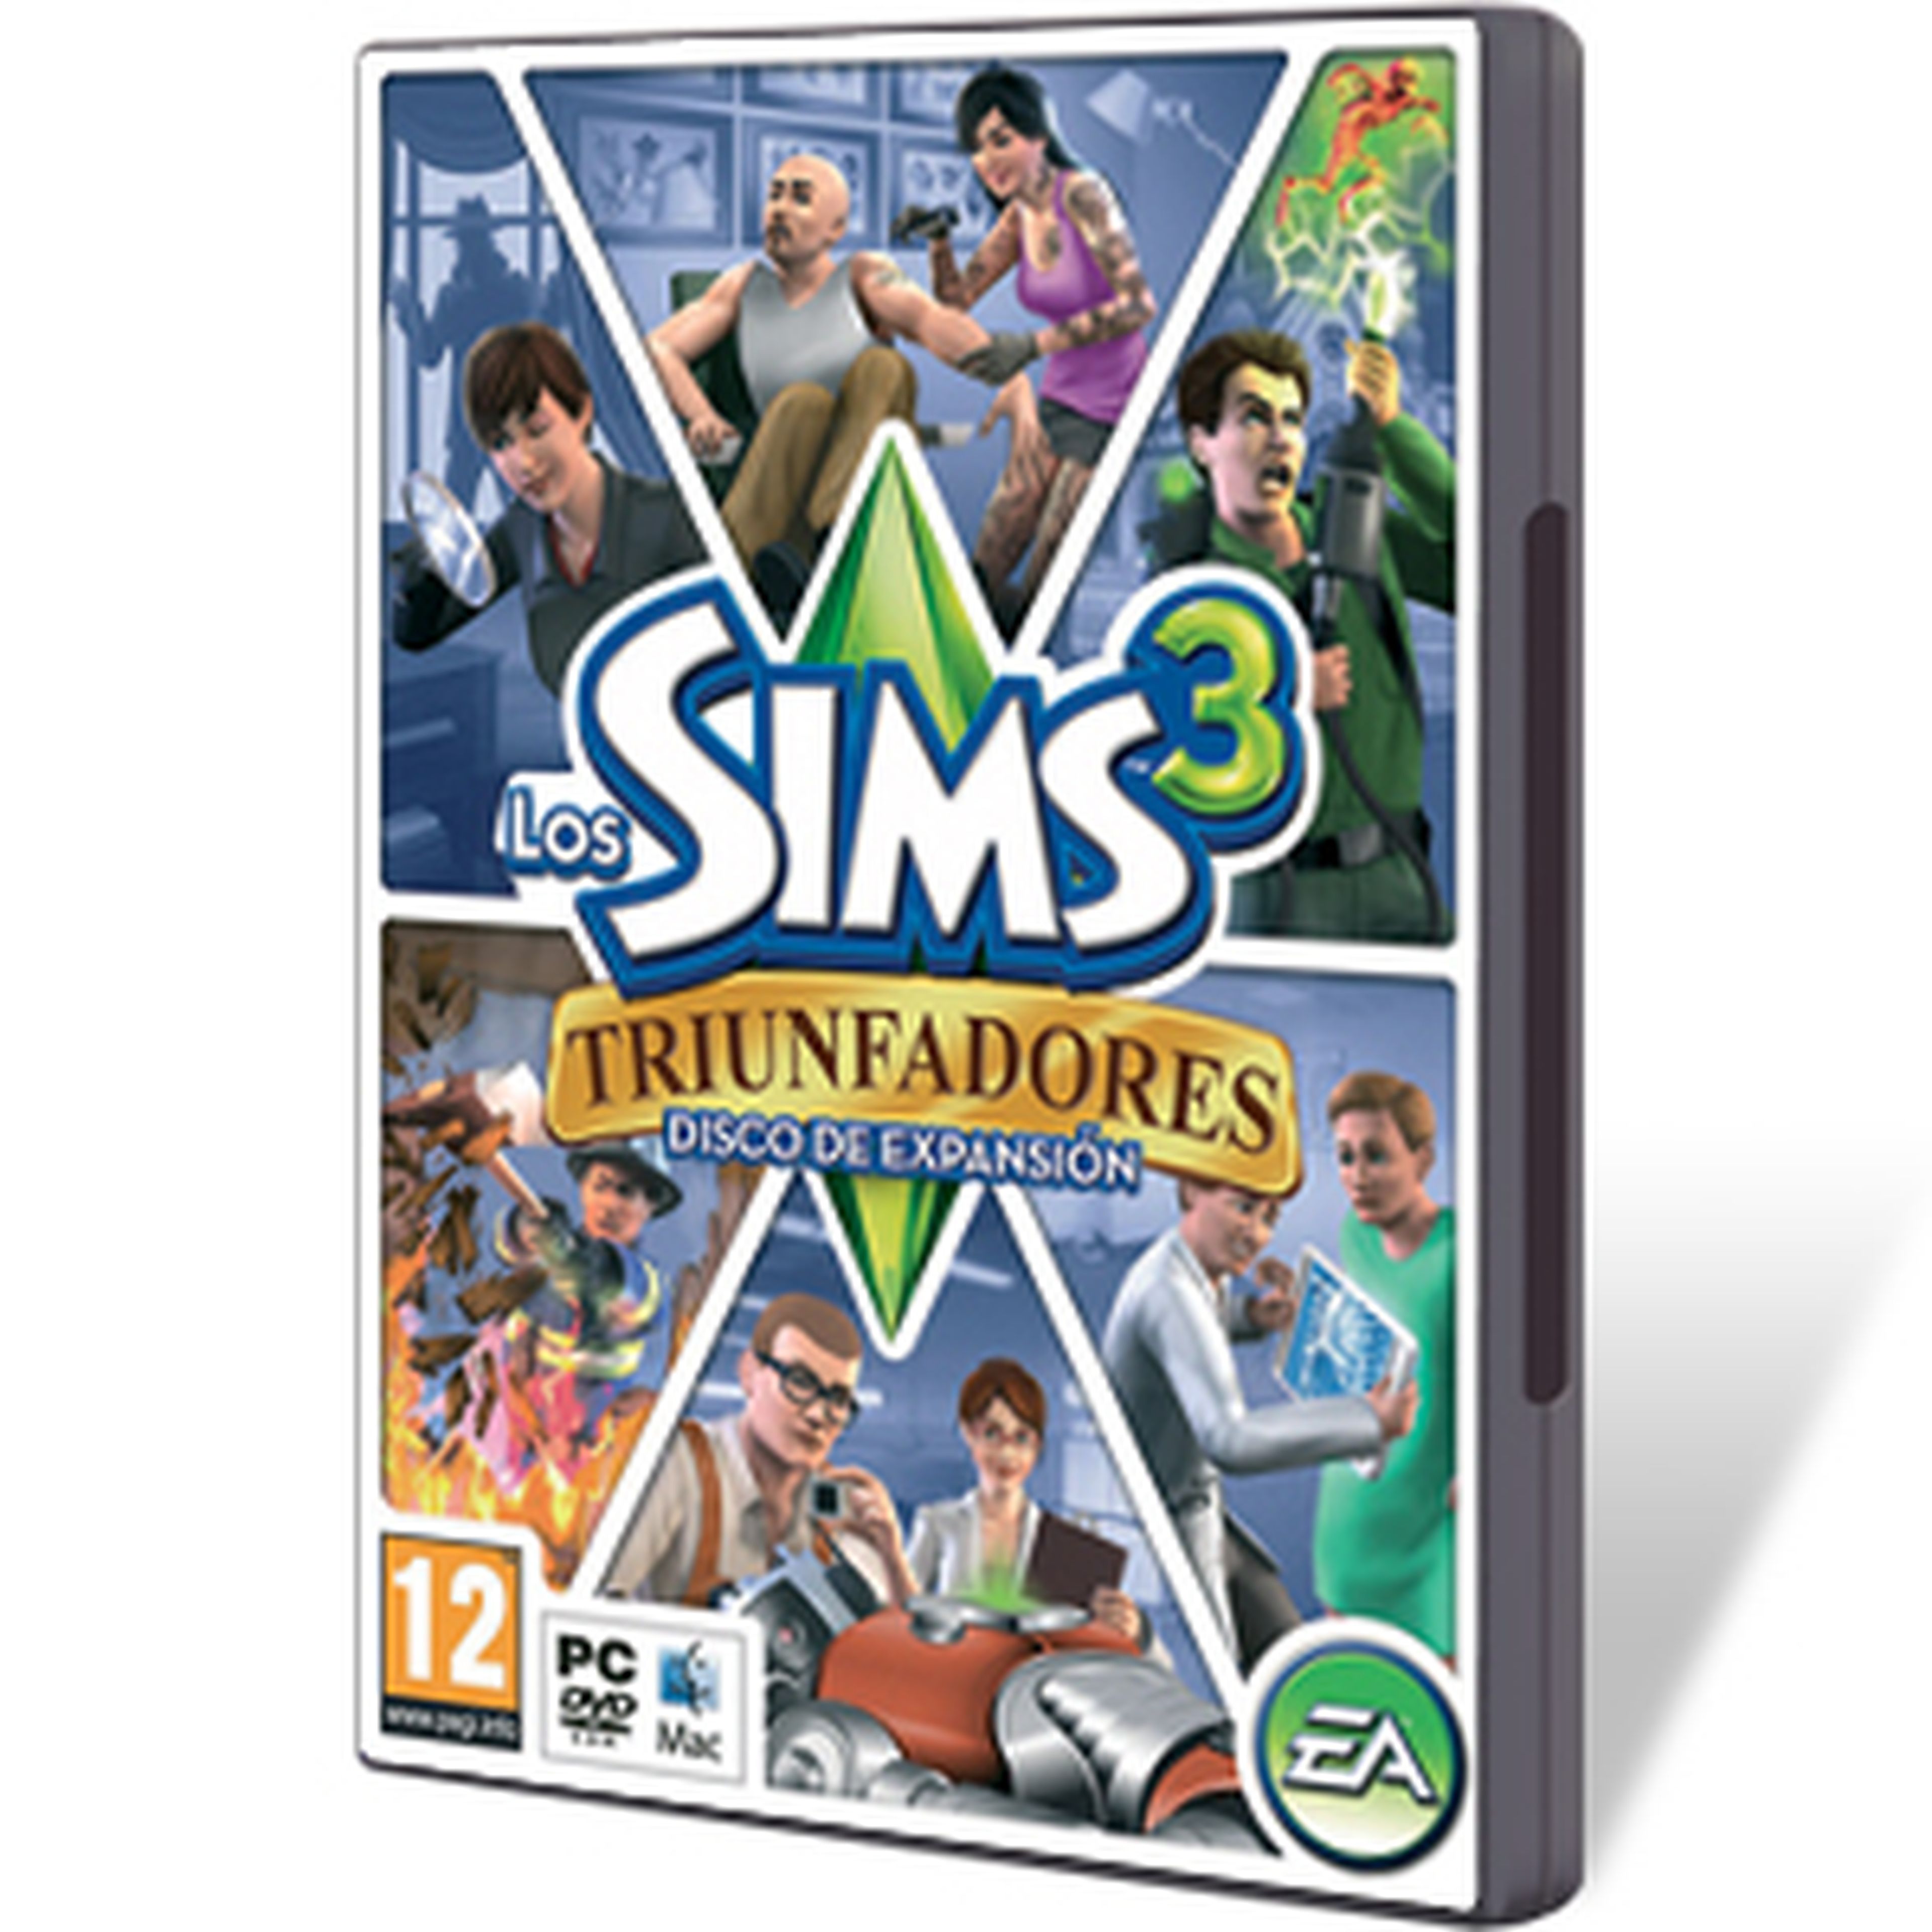 Los Sims 3 Triunfadores para PC